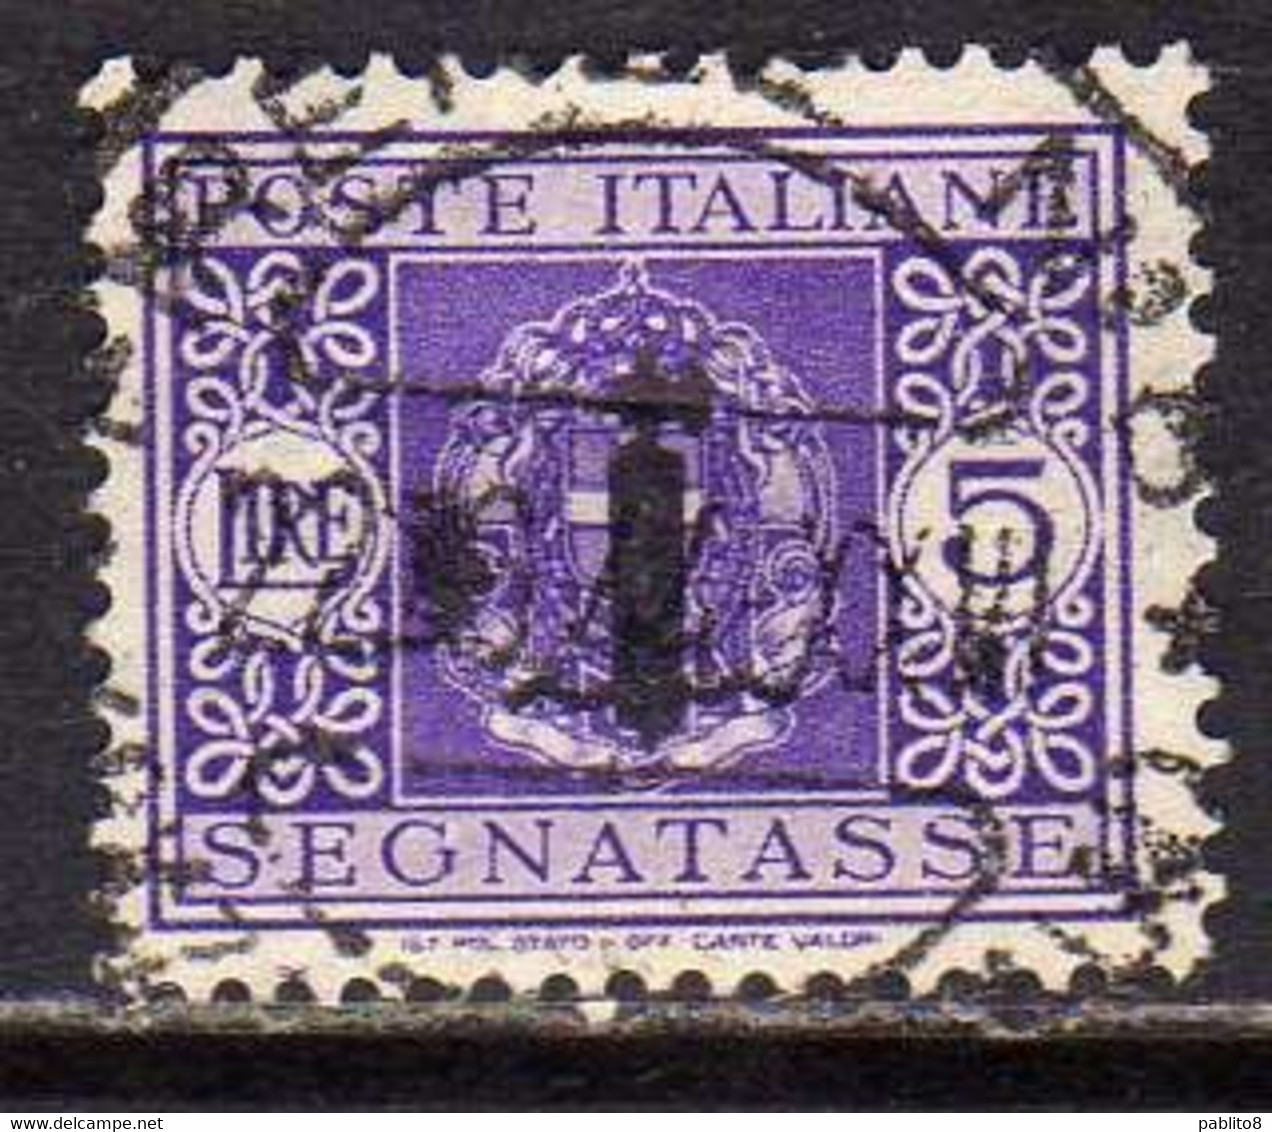 ITALIA REGNO ITALY KINGDOM 1944 REPUBBLICA SOCIALE ITALIANA RSI TASSE POSTAGE DUE TAXES SEGNATASSE FASCIO LIRE 5 USATO - Postage Due